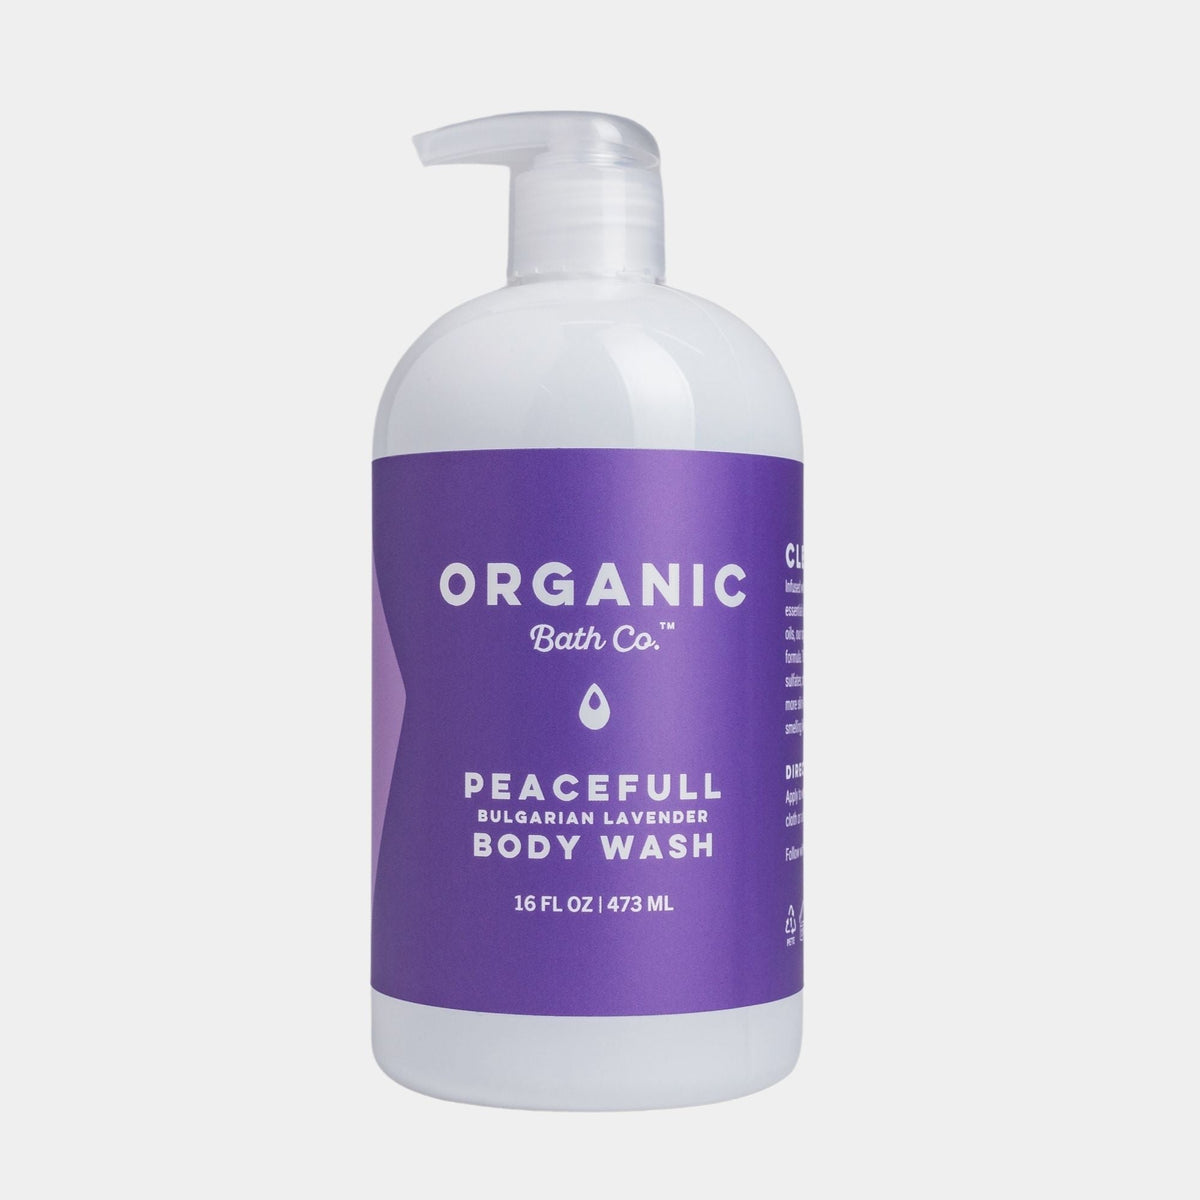 https://www.organicbath.co/cdn/shop/products/peacefull-organic-body-wash-588614_1200x.jpg?v=1696373272